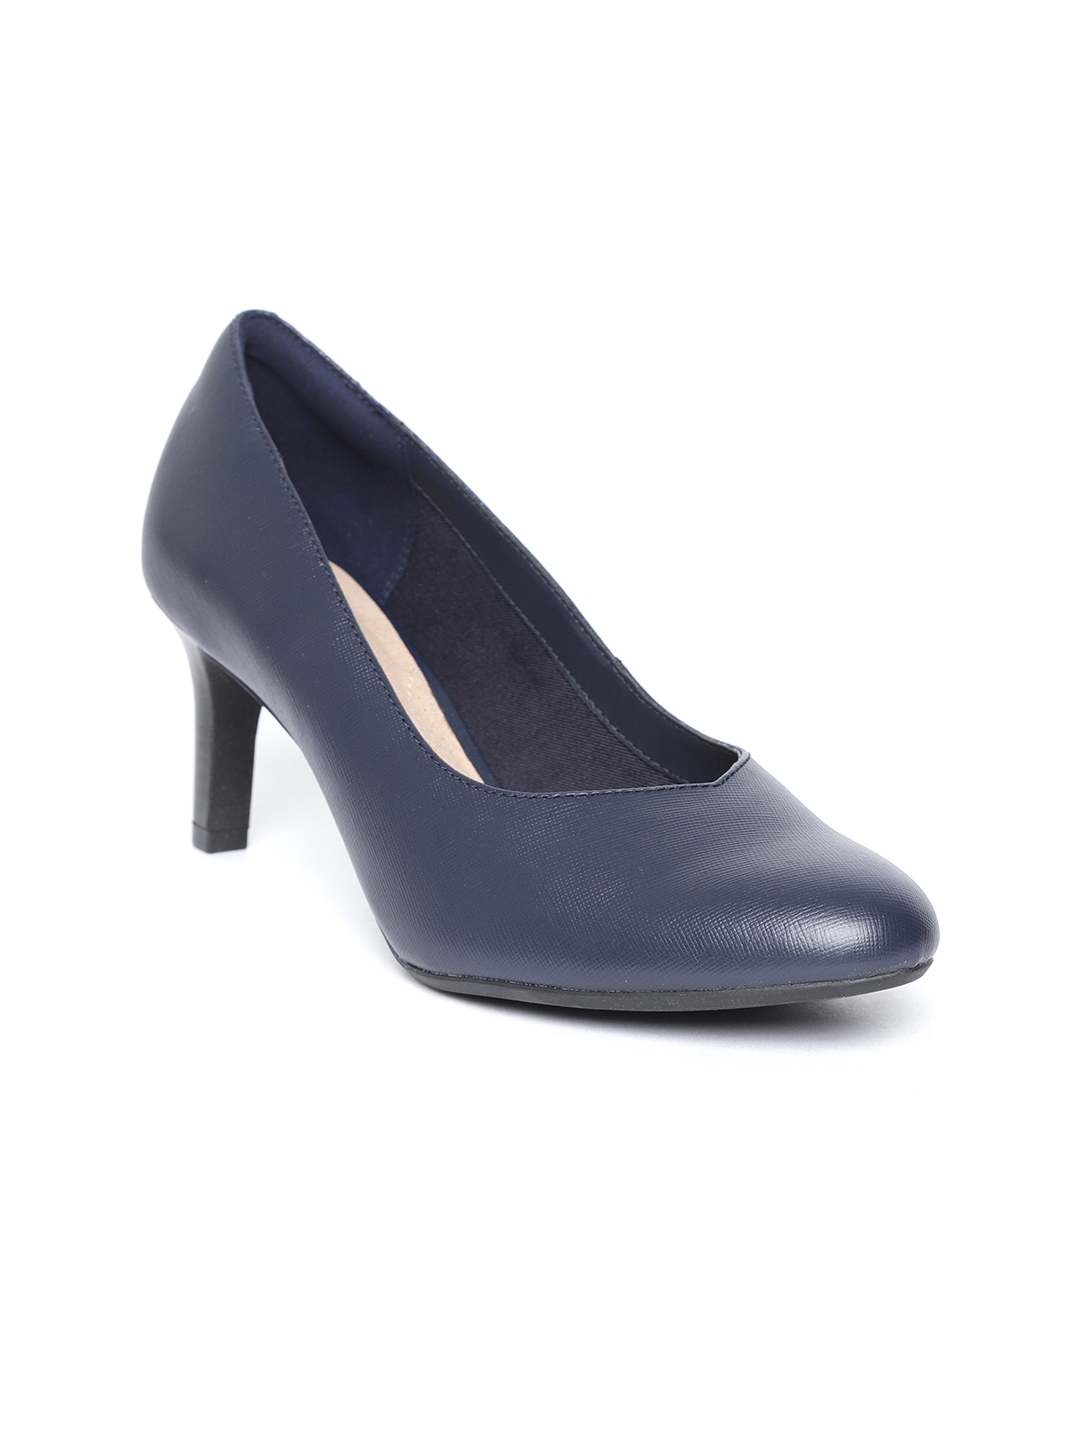 clarks navy blue heels